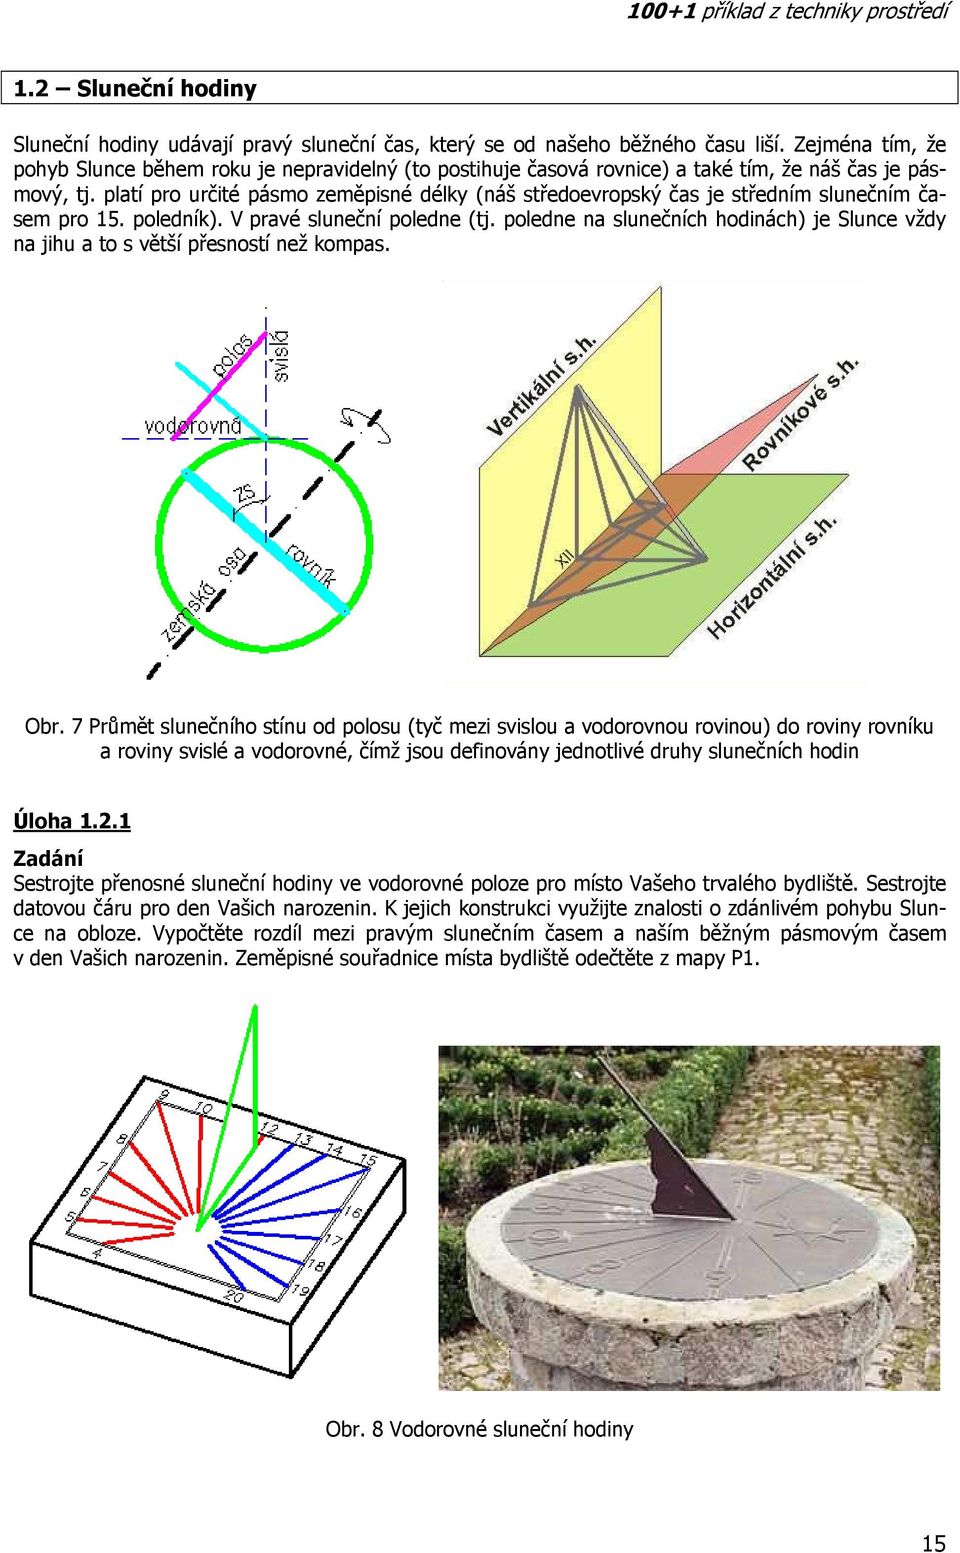 1.2 Sluneční hodiny příklad z techniky prostředí - PDF Stažení zdarma